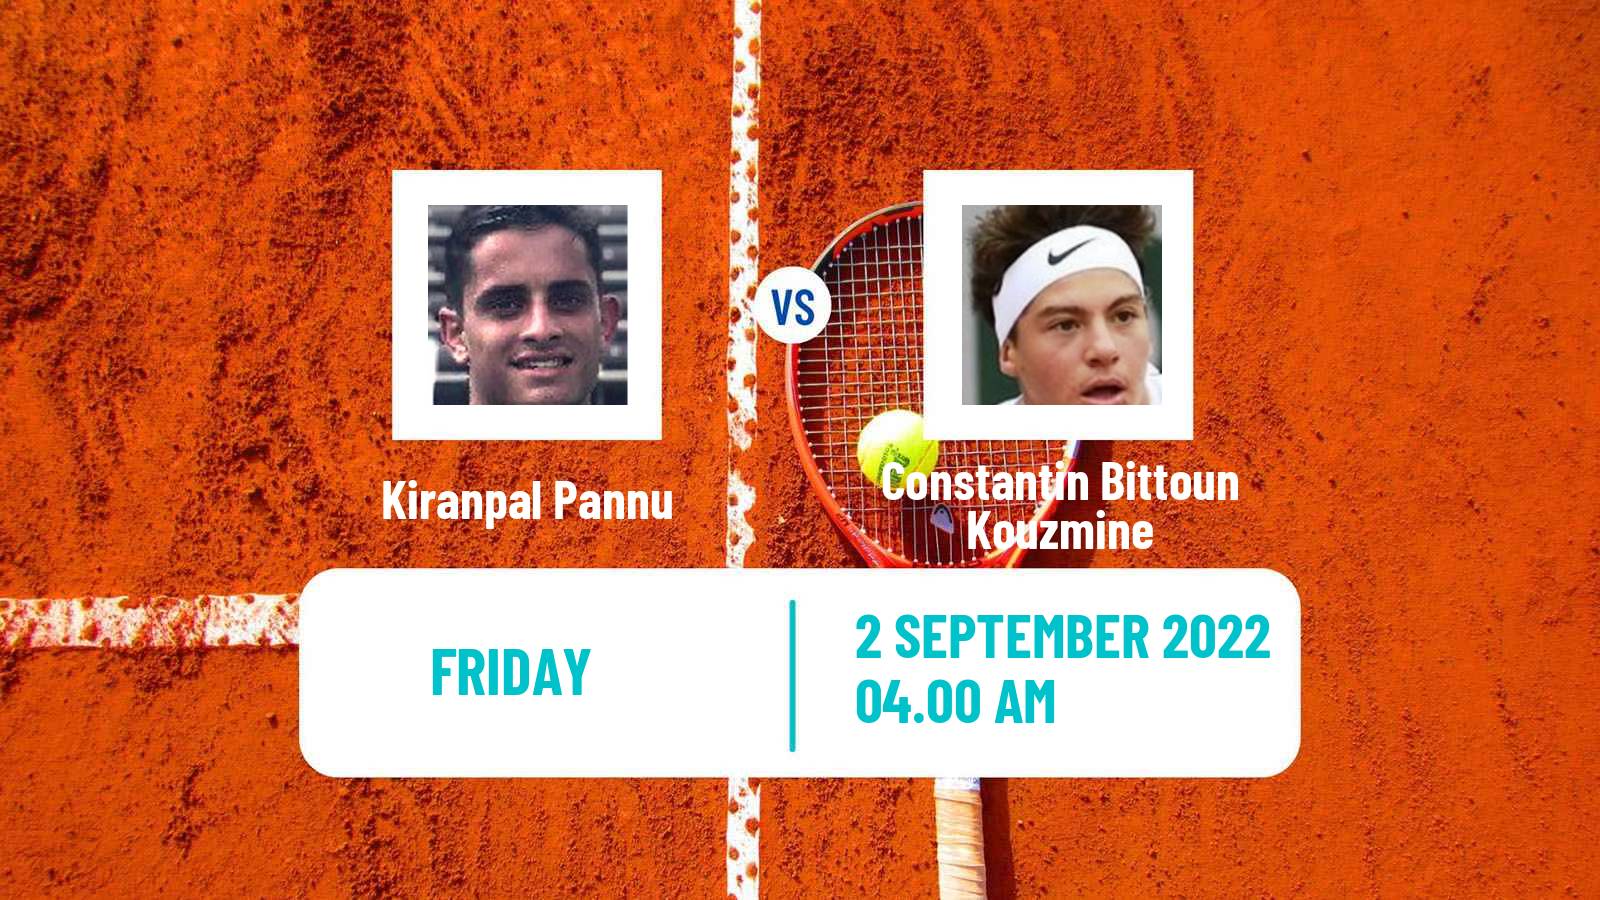 Tennis ITF Tournaments Kiranpal Pannu - Constantin Bittoun Kouzmine